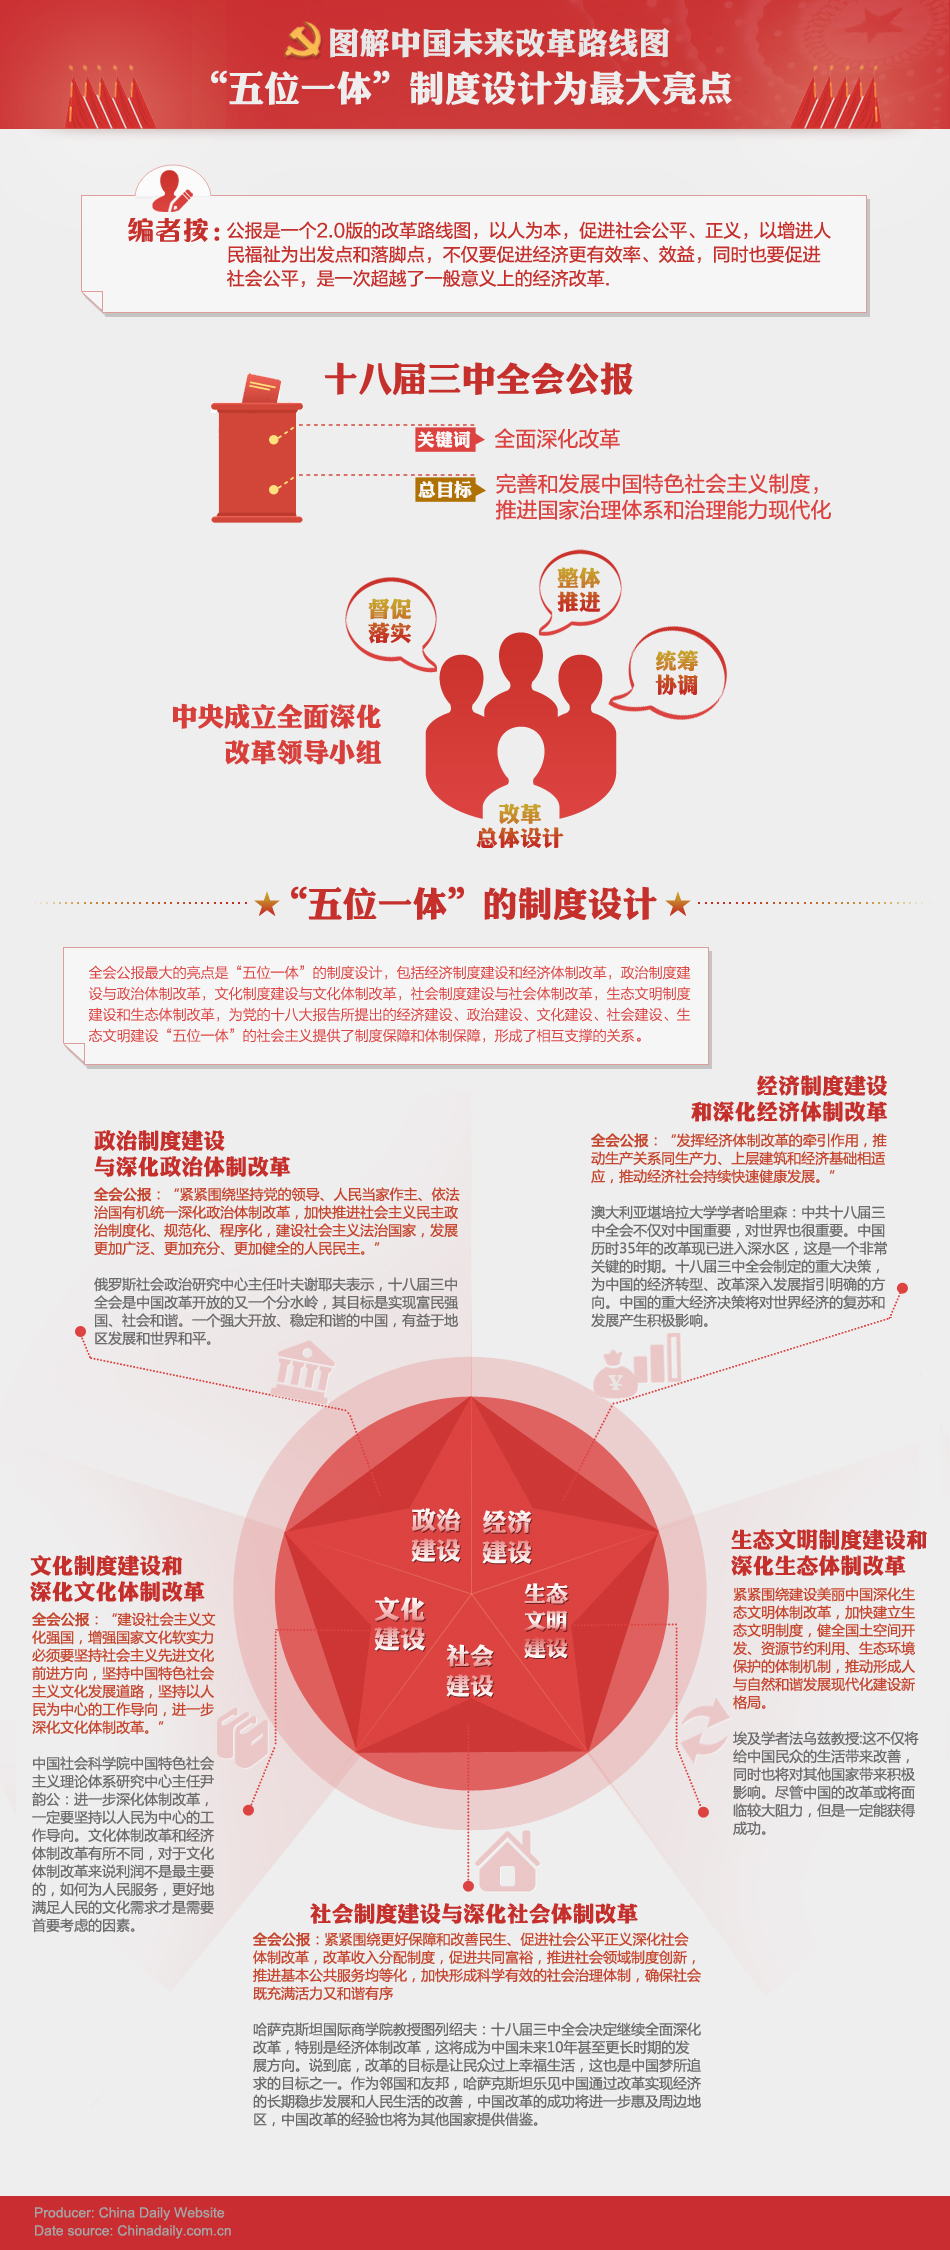 图解中国未来改革路线图：“五位一体”制度设计为最大亮点